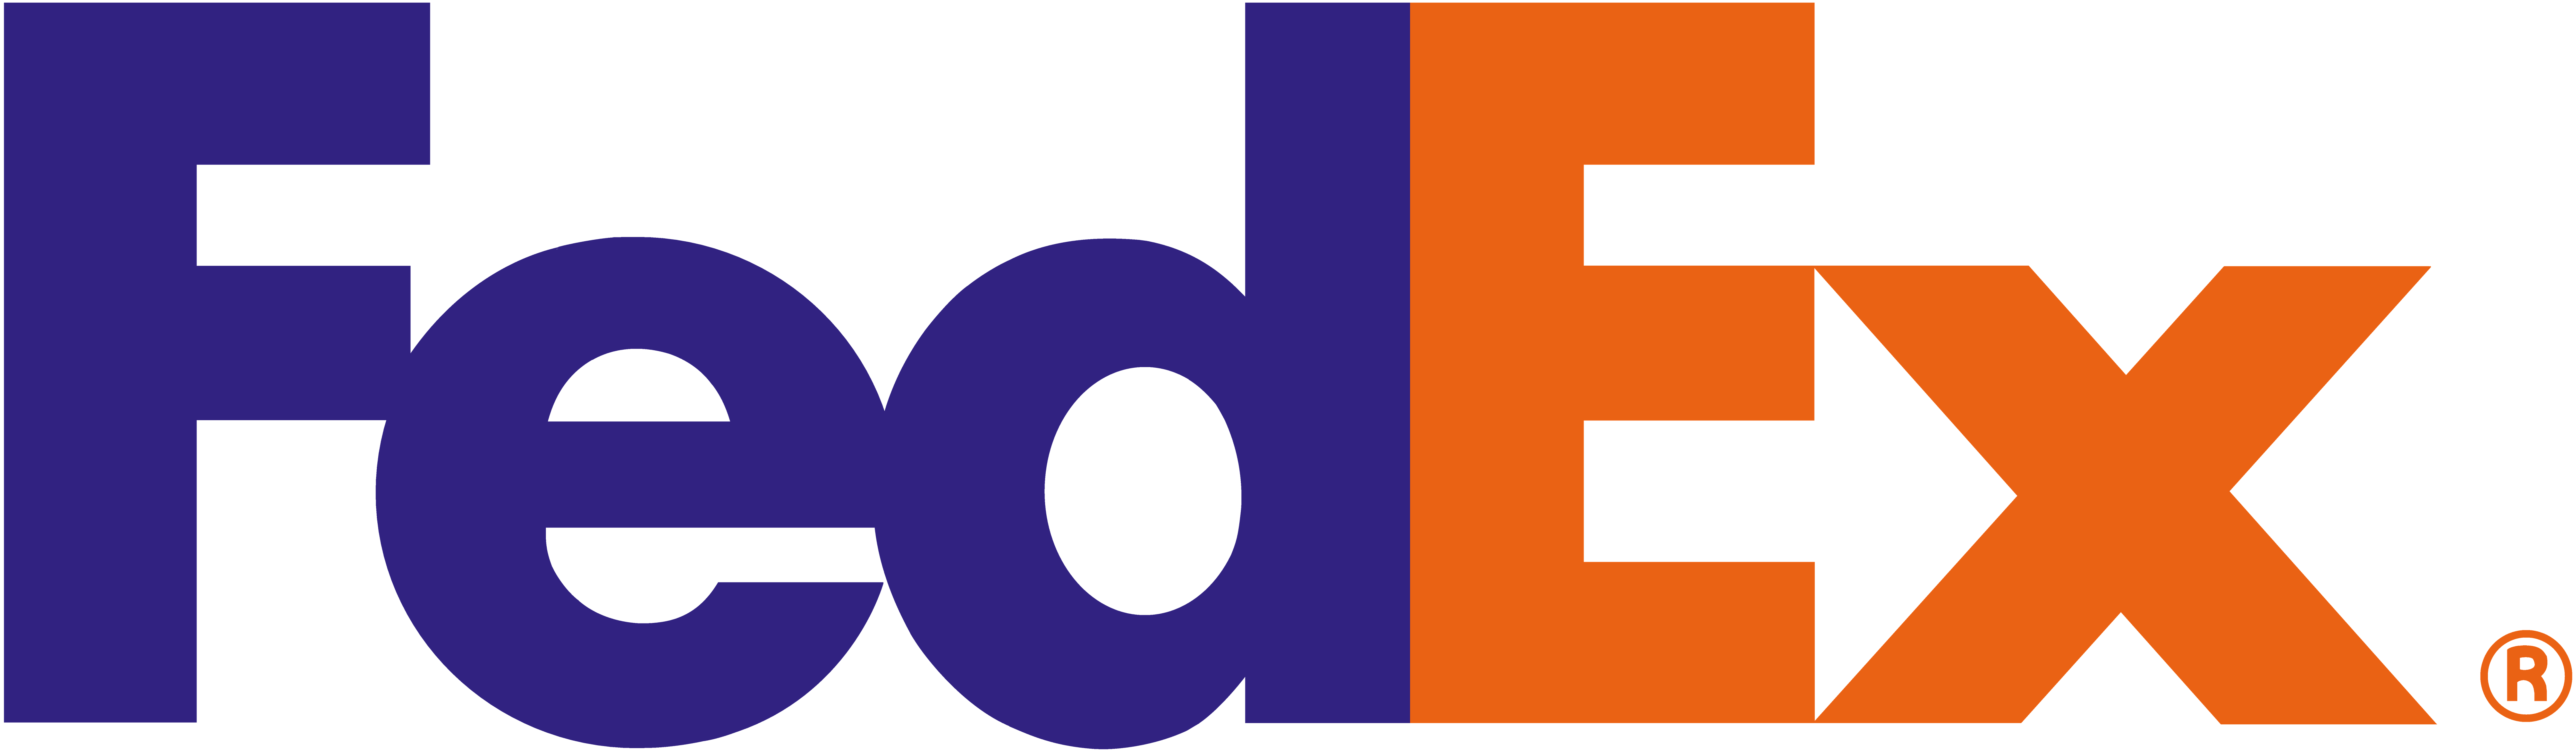 fedex emblem delivery business logo